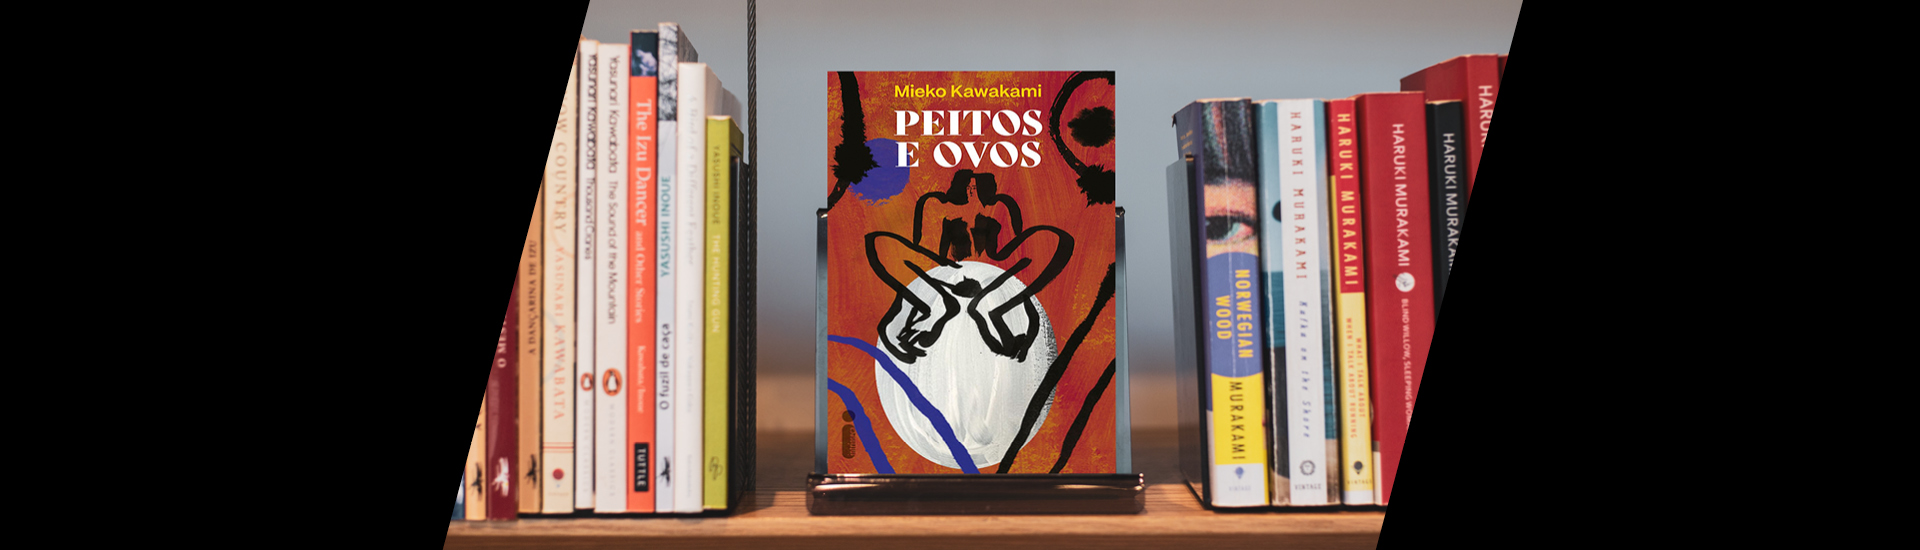 Livro Peitos e Ovos, de Mieko Kawakami em prateleira com outros livros ao lado